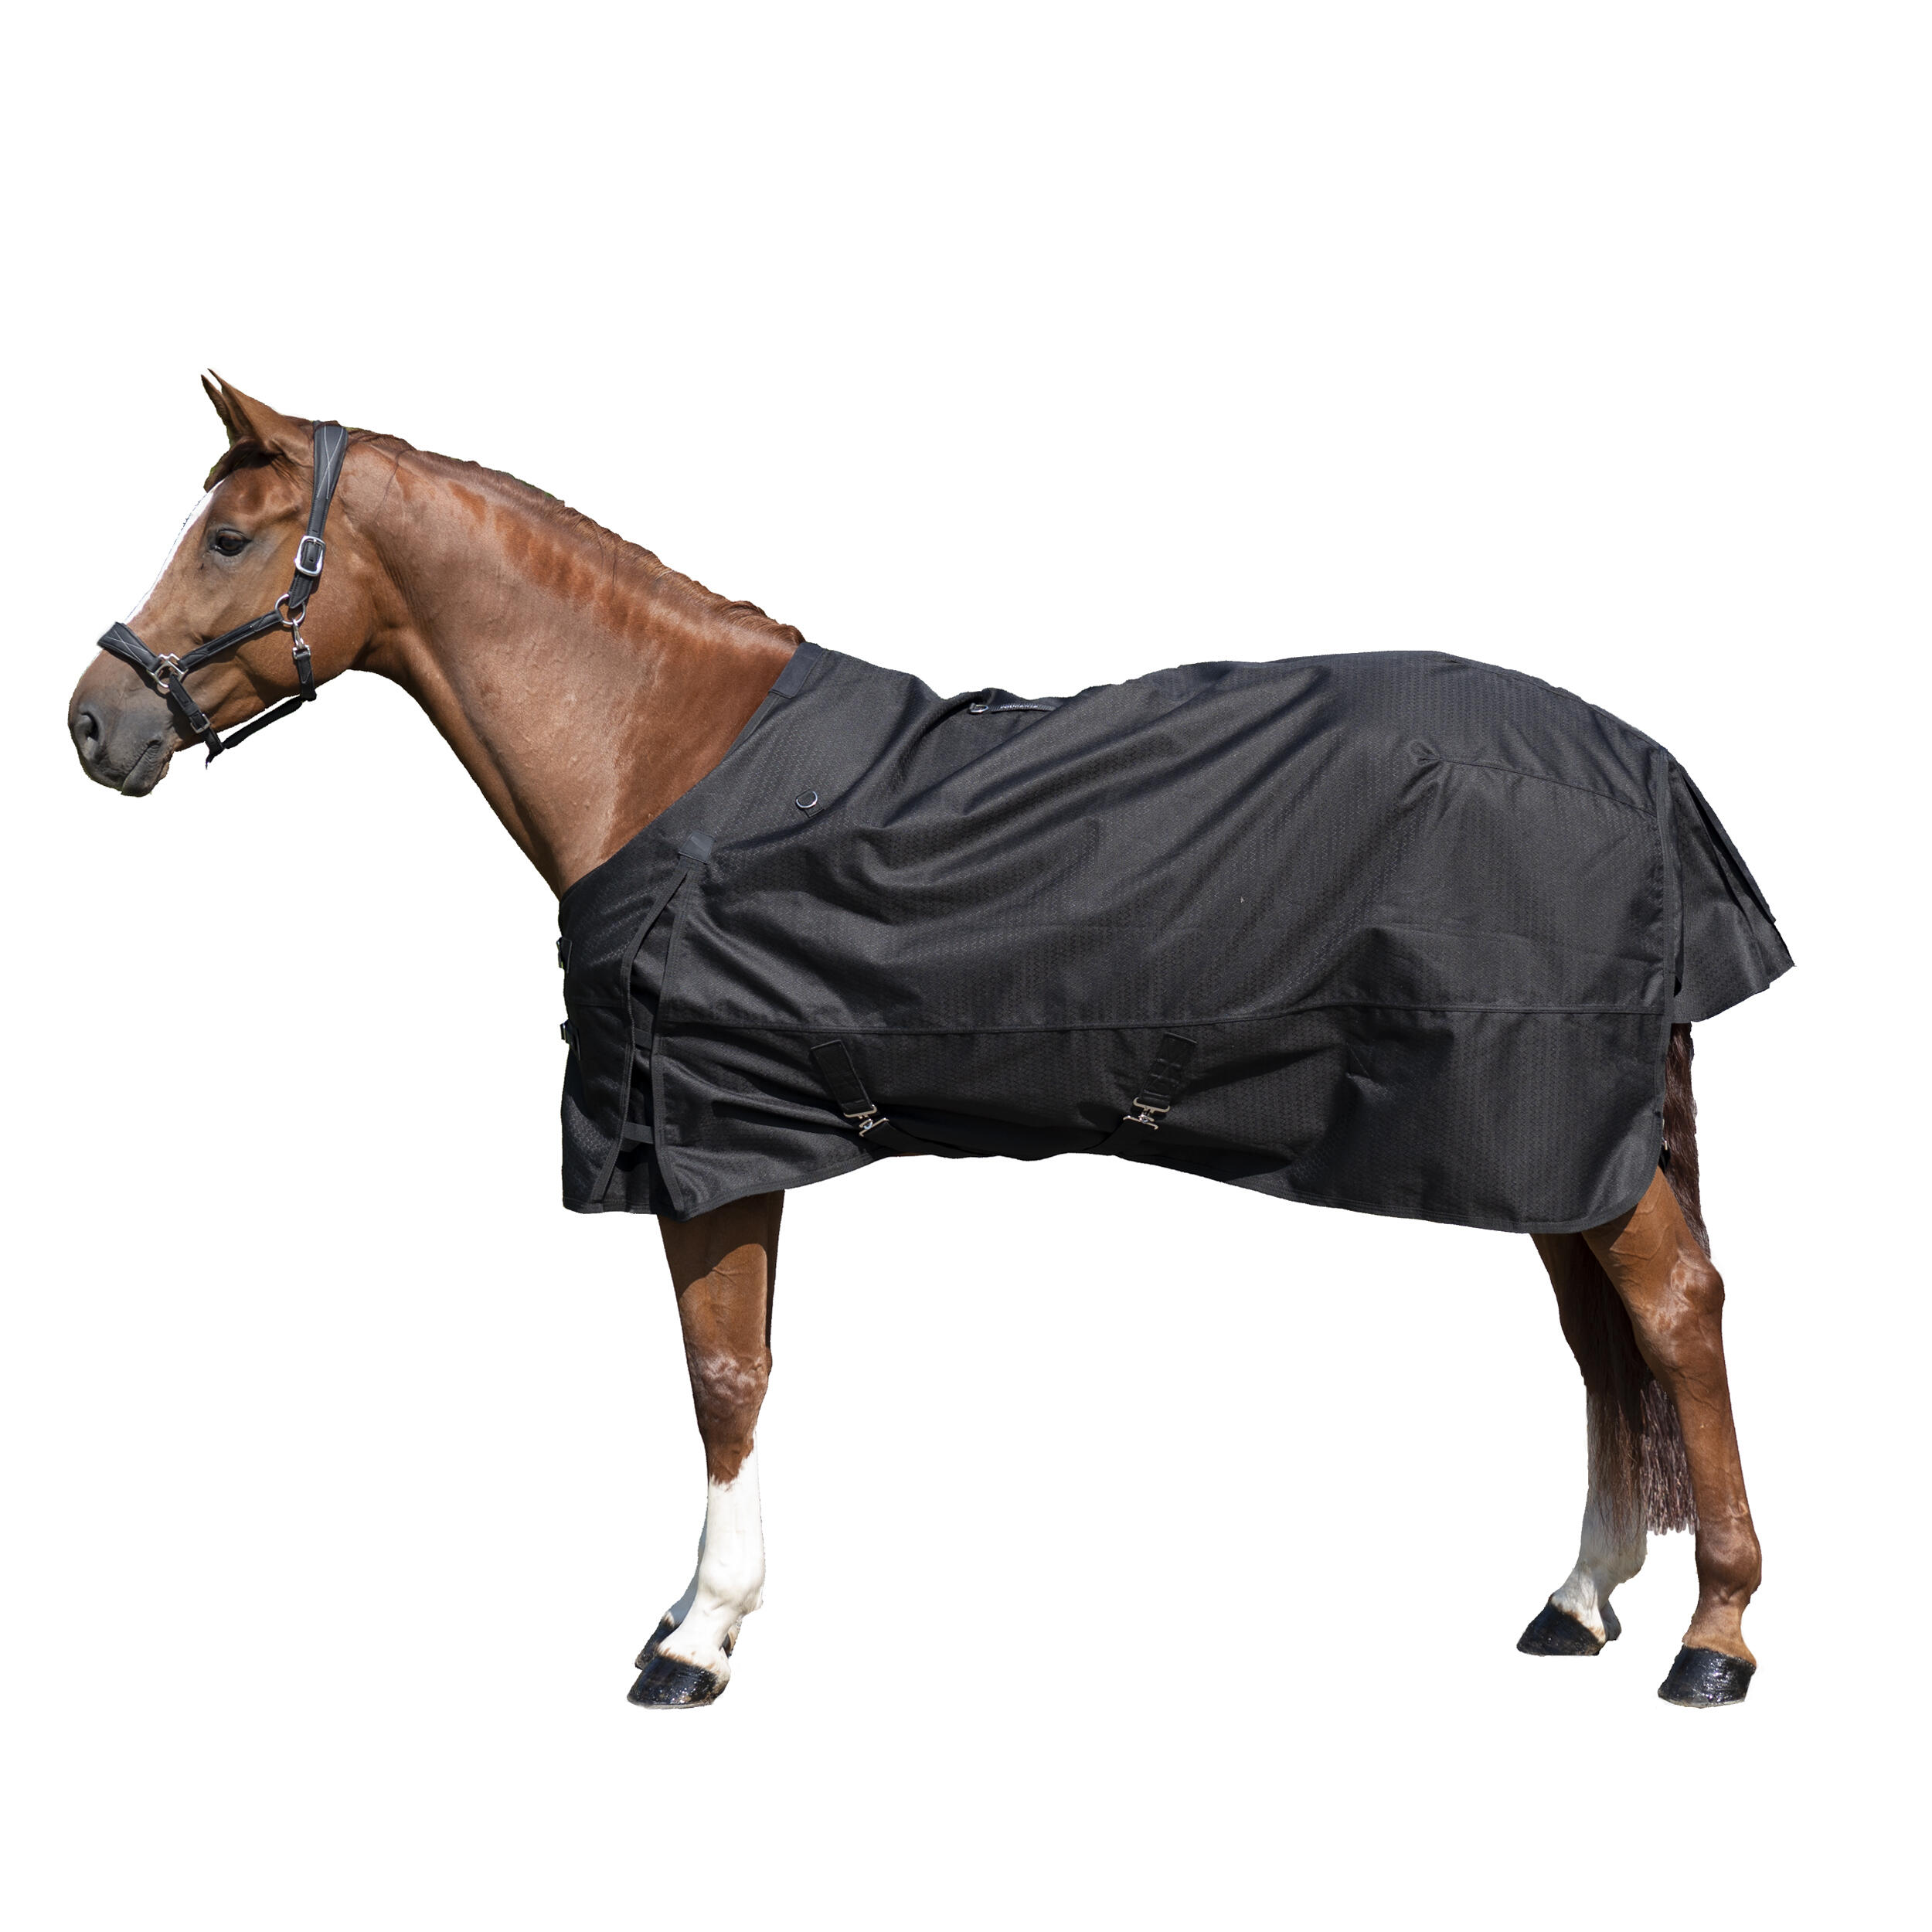 Pătură impermeabilă pentru exterior echitație ALLWEATHER 1000D negru cai decathlon.ro